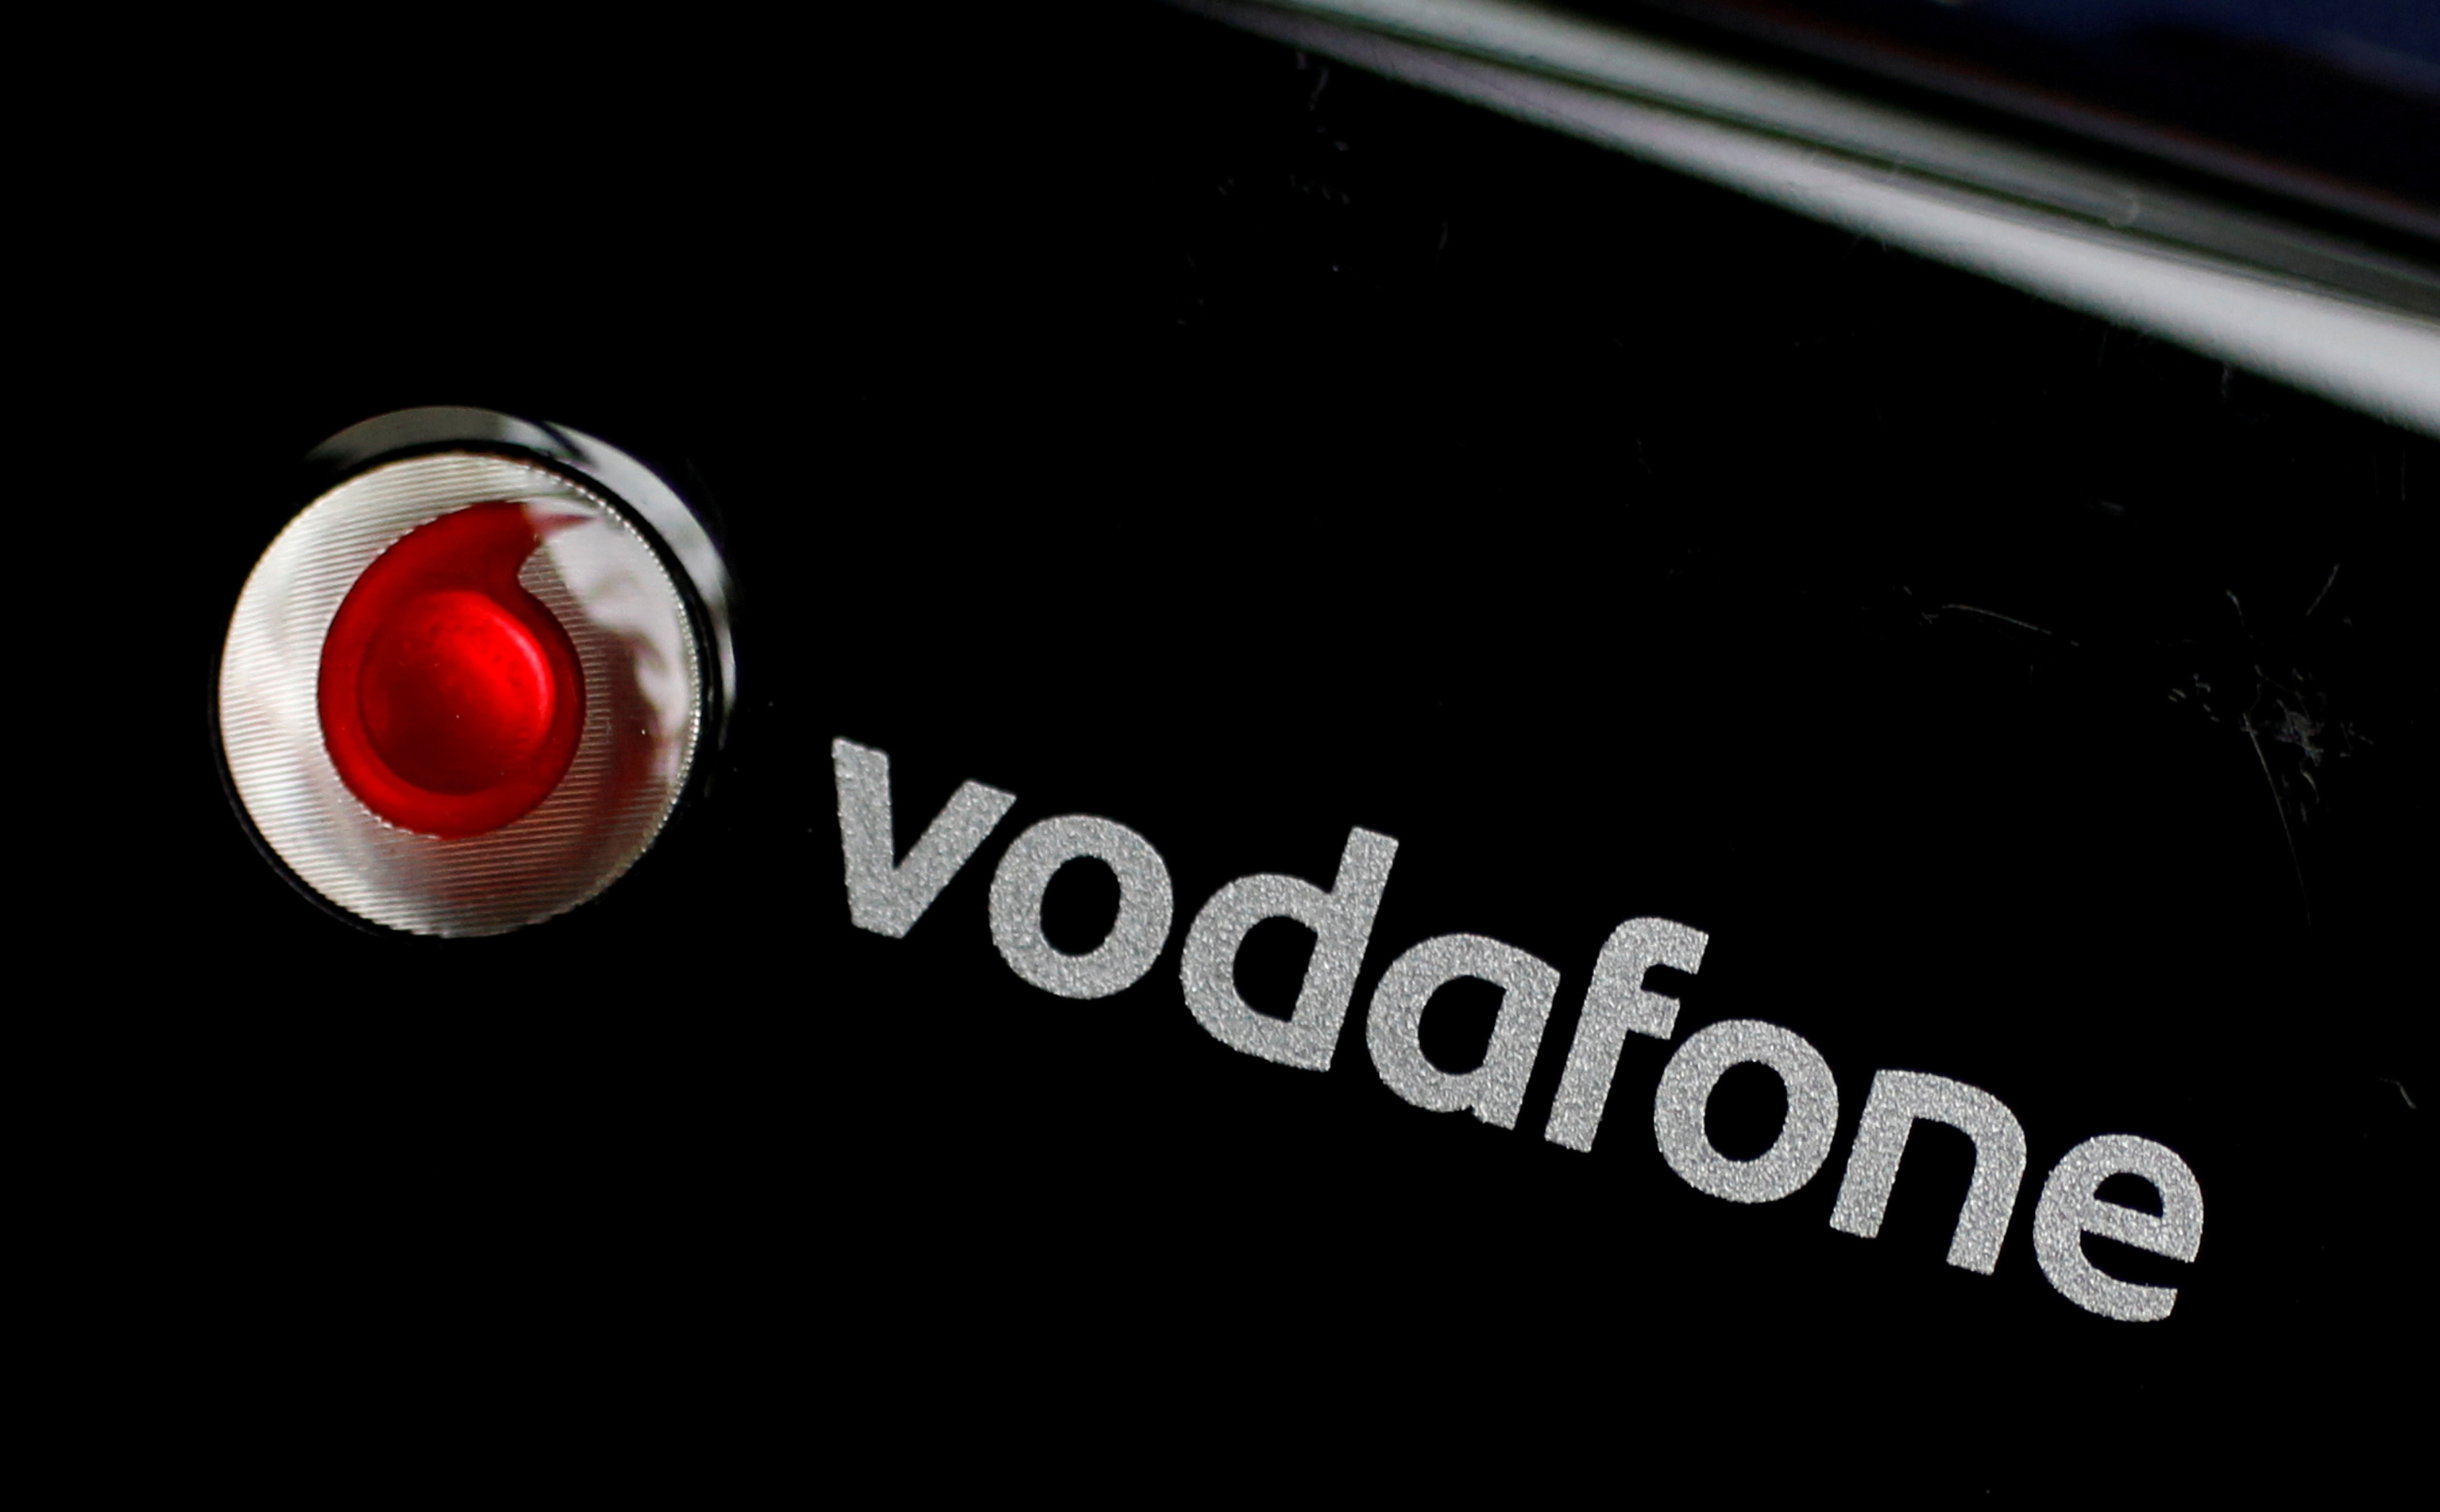 Imagen del logotipo de Vodafone.